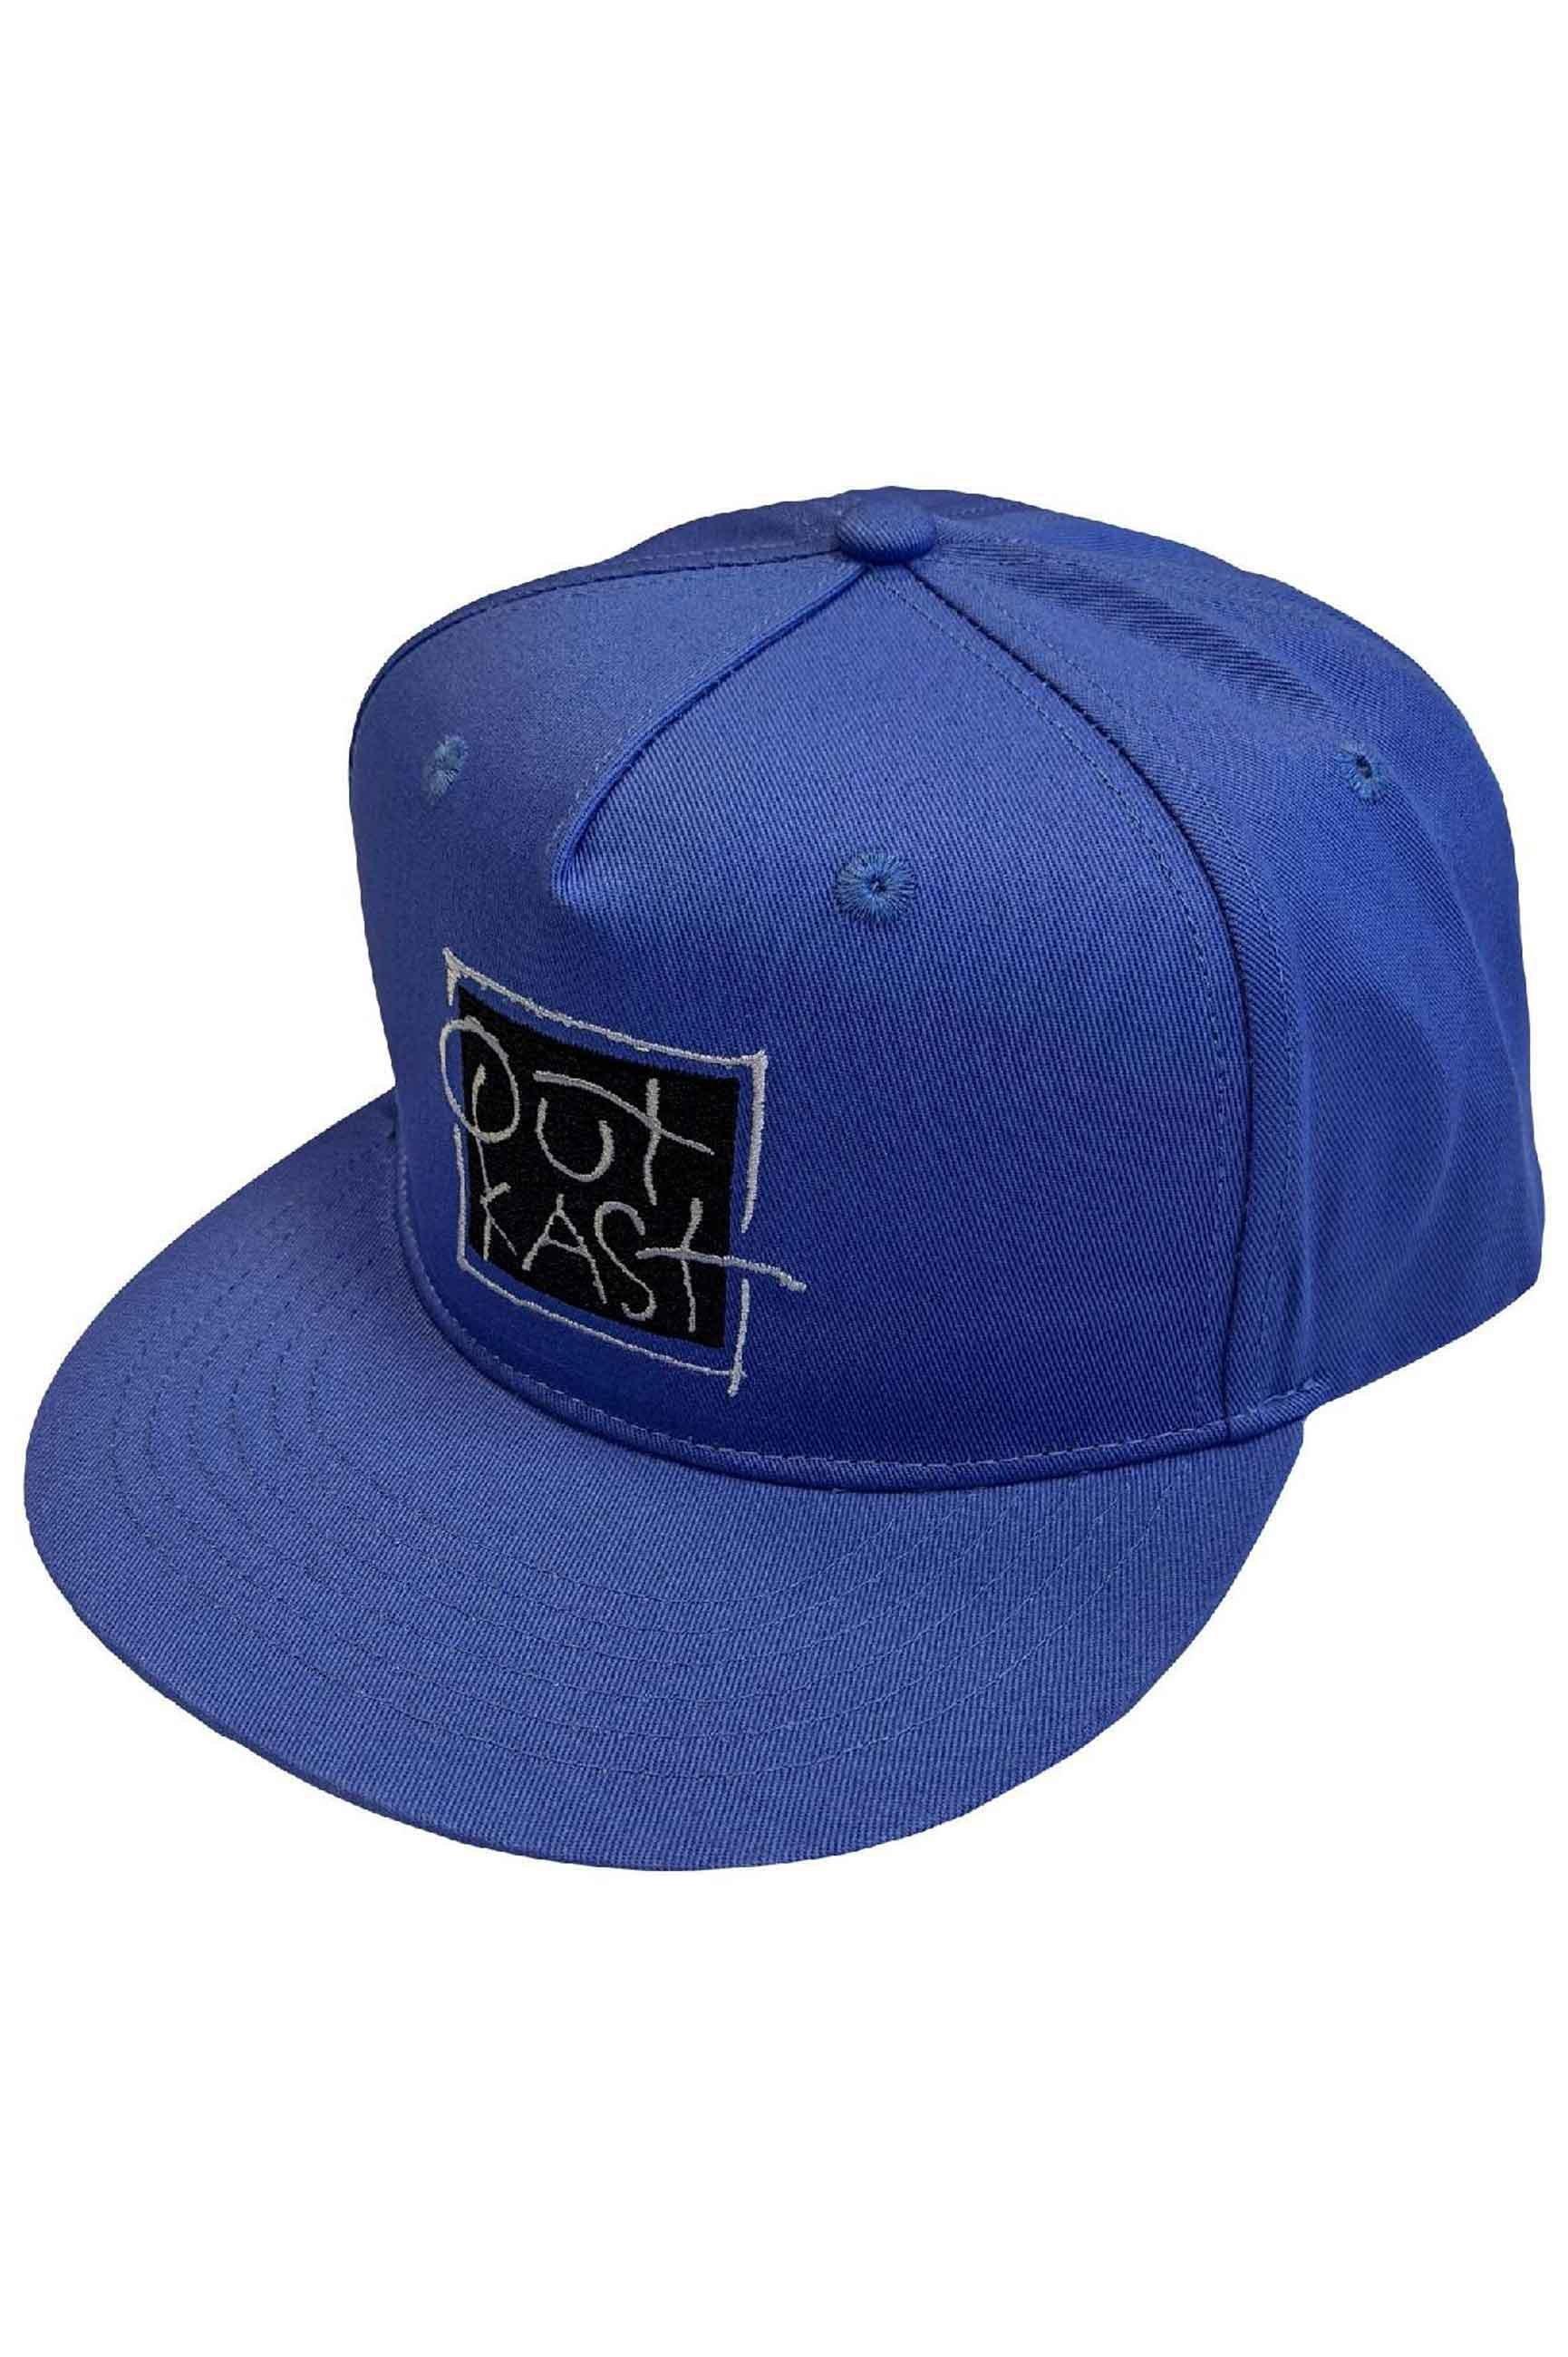 Бейсбольная кепка Snapback с логотипом Box Outkast, синий printio кепка с логотипом wap click